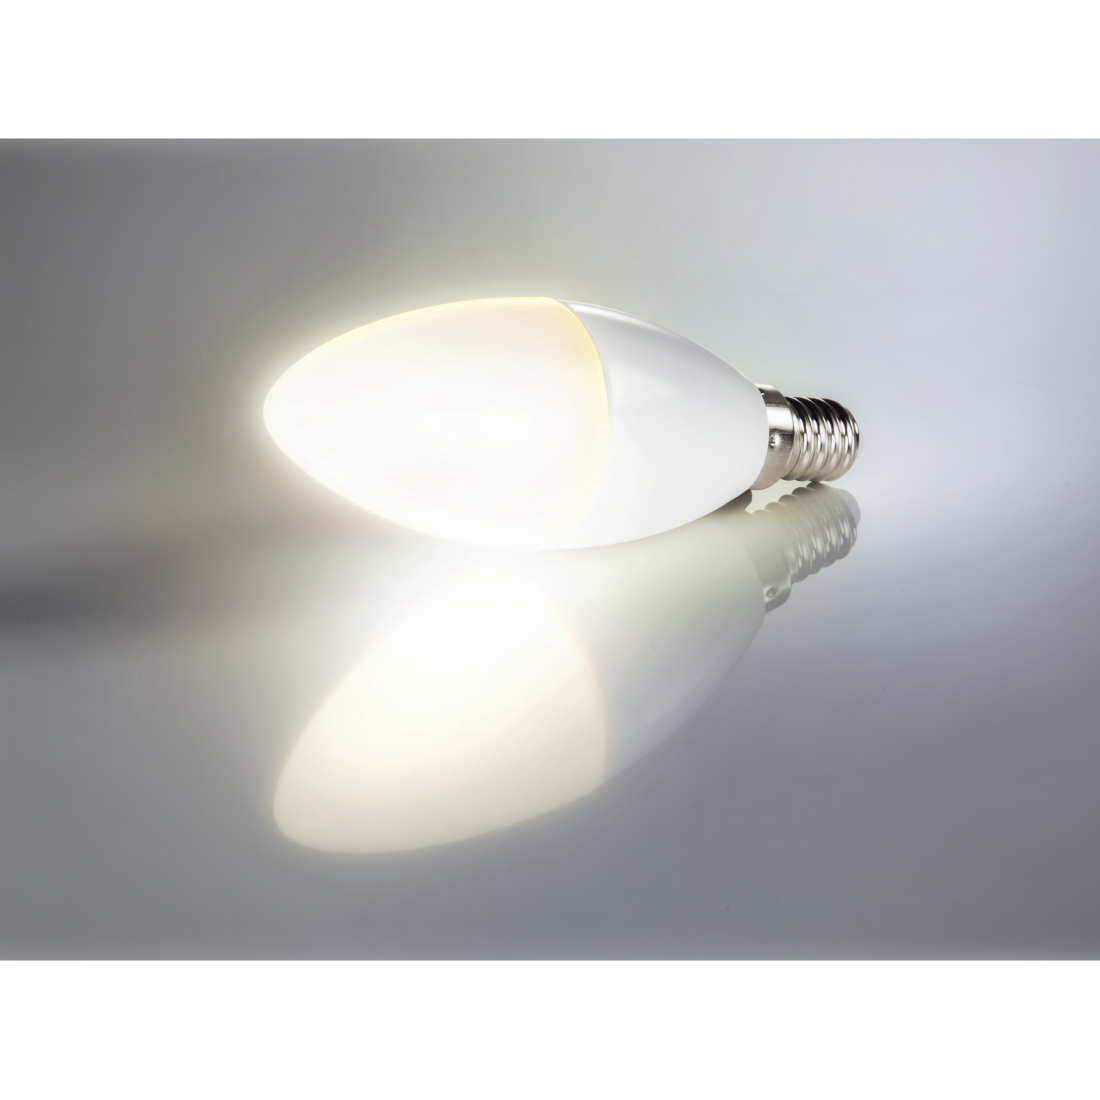 abx4 High-Res Image4 - Xavax, Ampoule LED, E14, 806lm rempl. 60W, ampoule bougie, blanc chaud